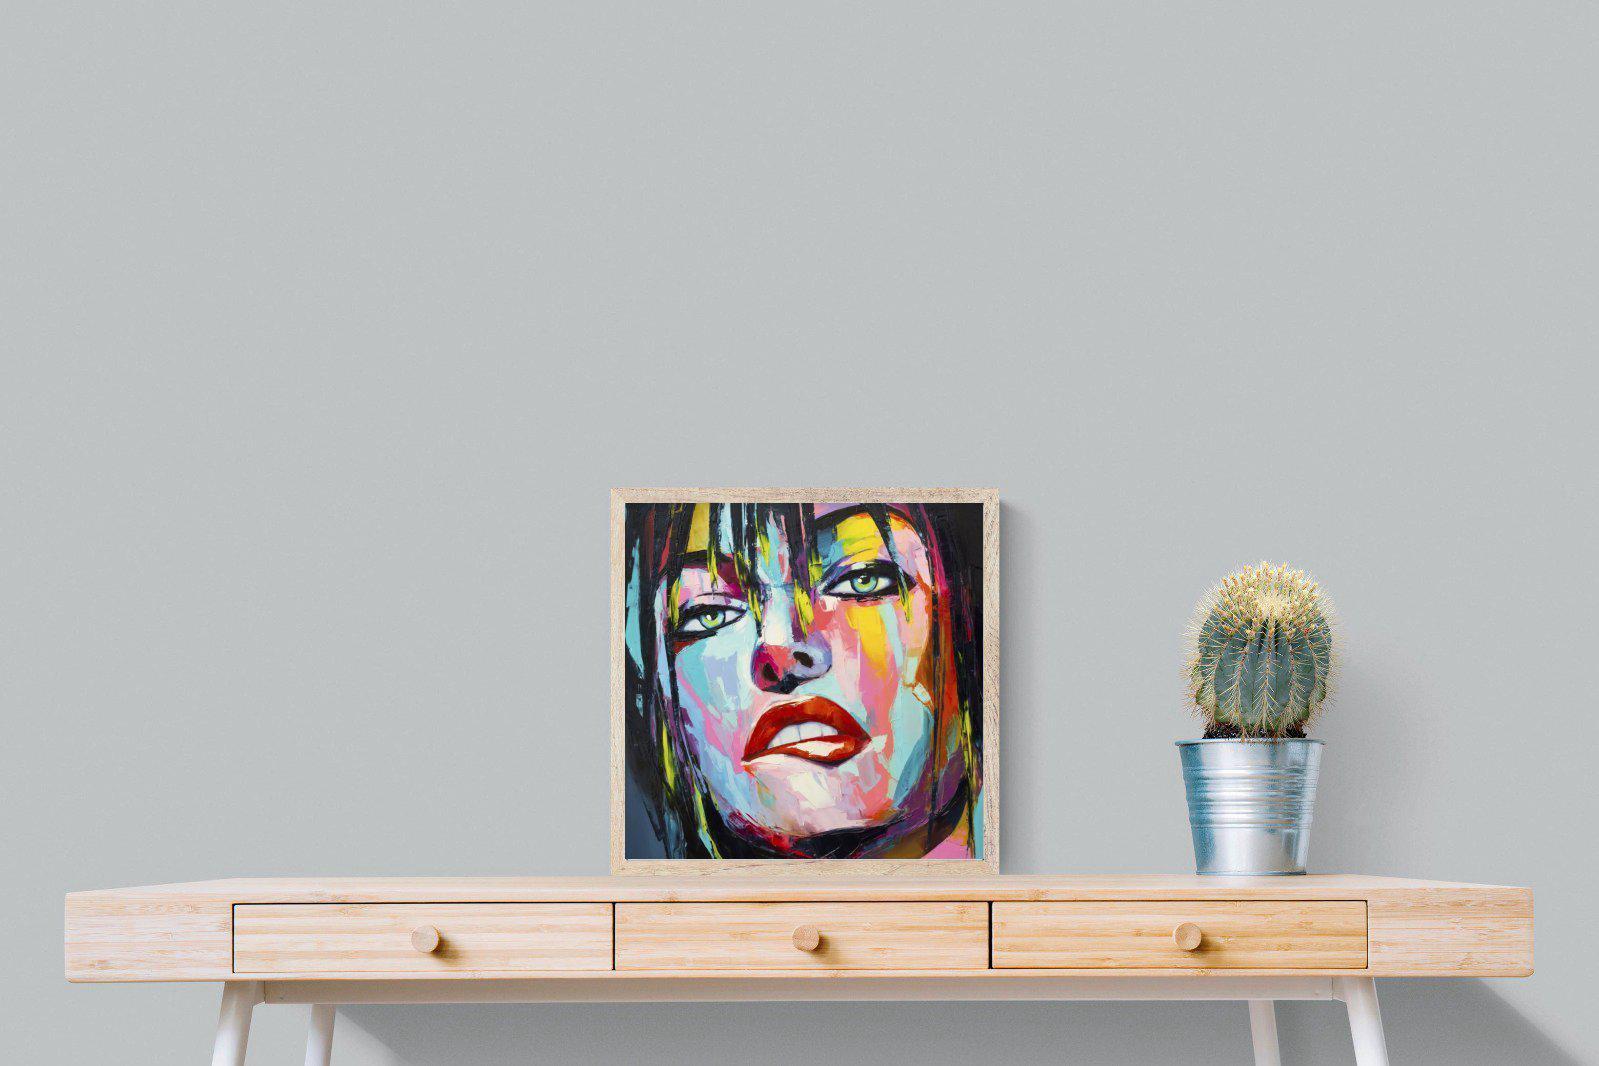 Risky-Wall_Art-50 x 50cm-Mounted Canvas-Wood-Pixalot